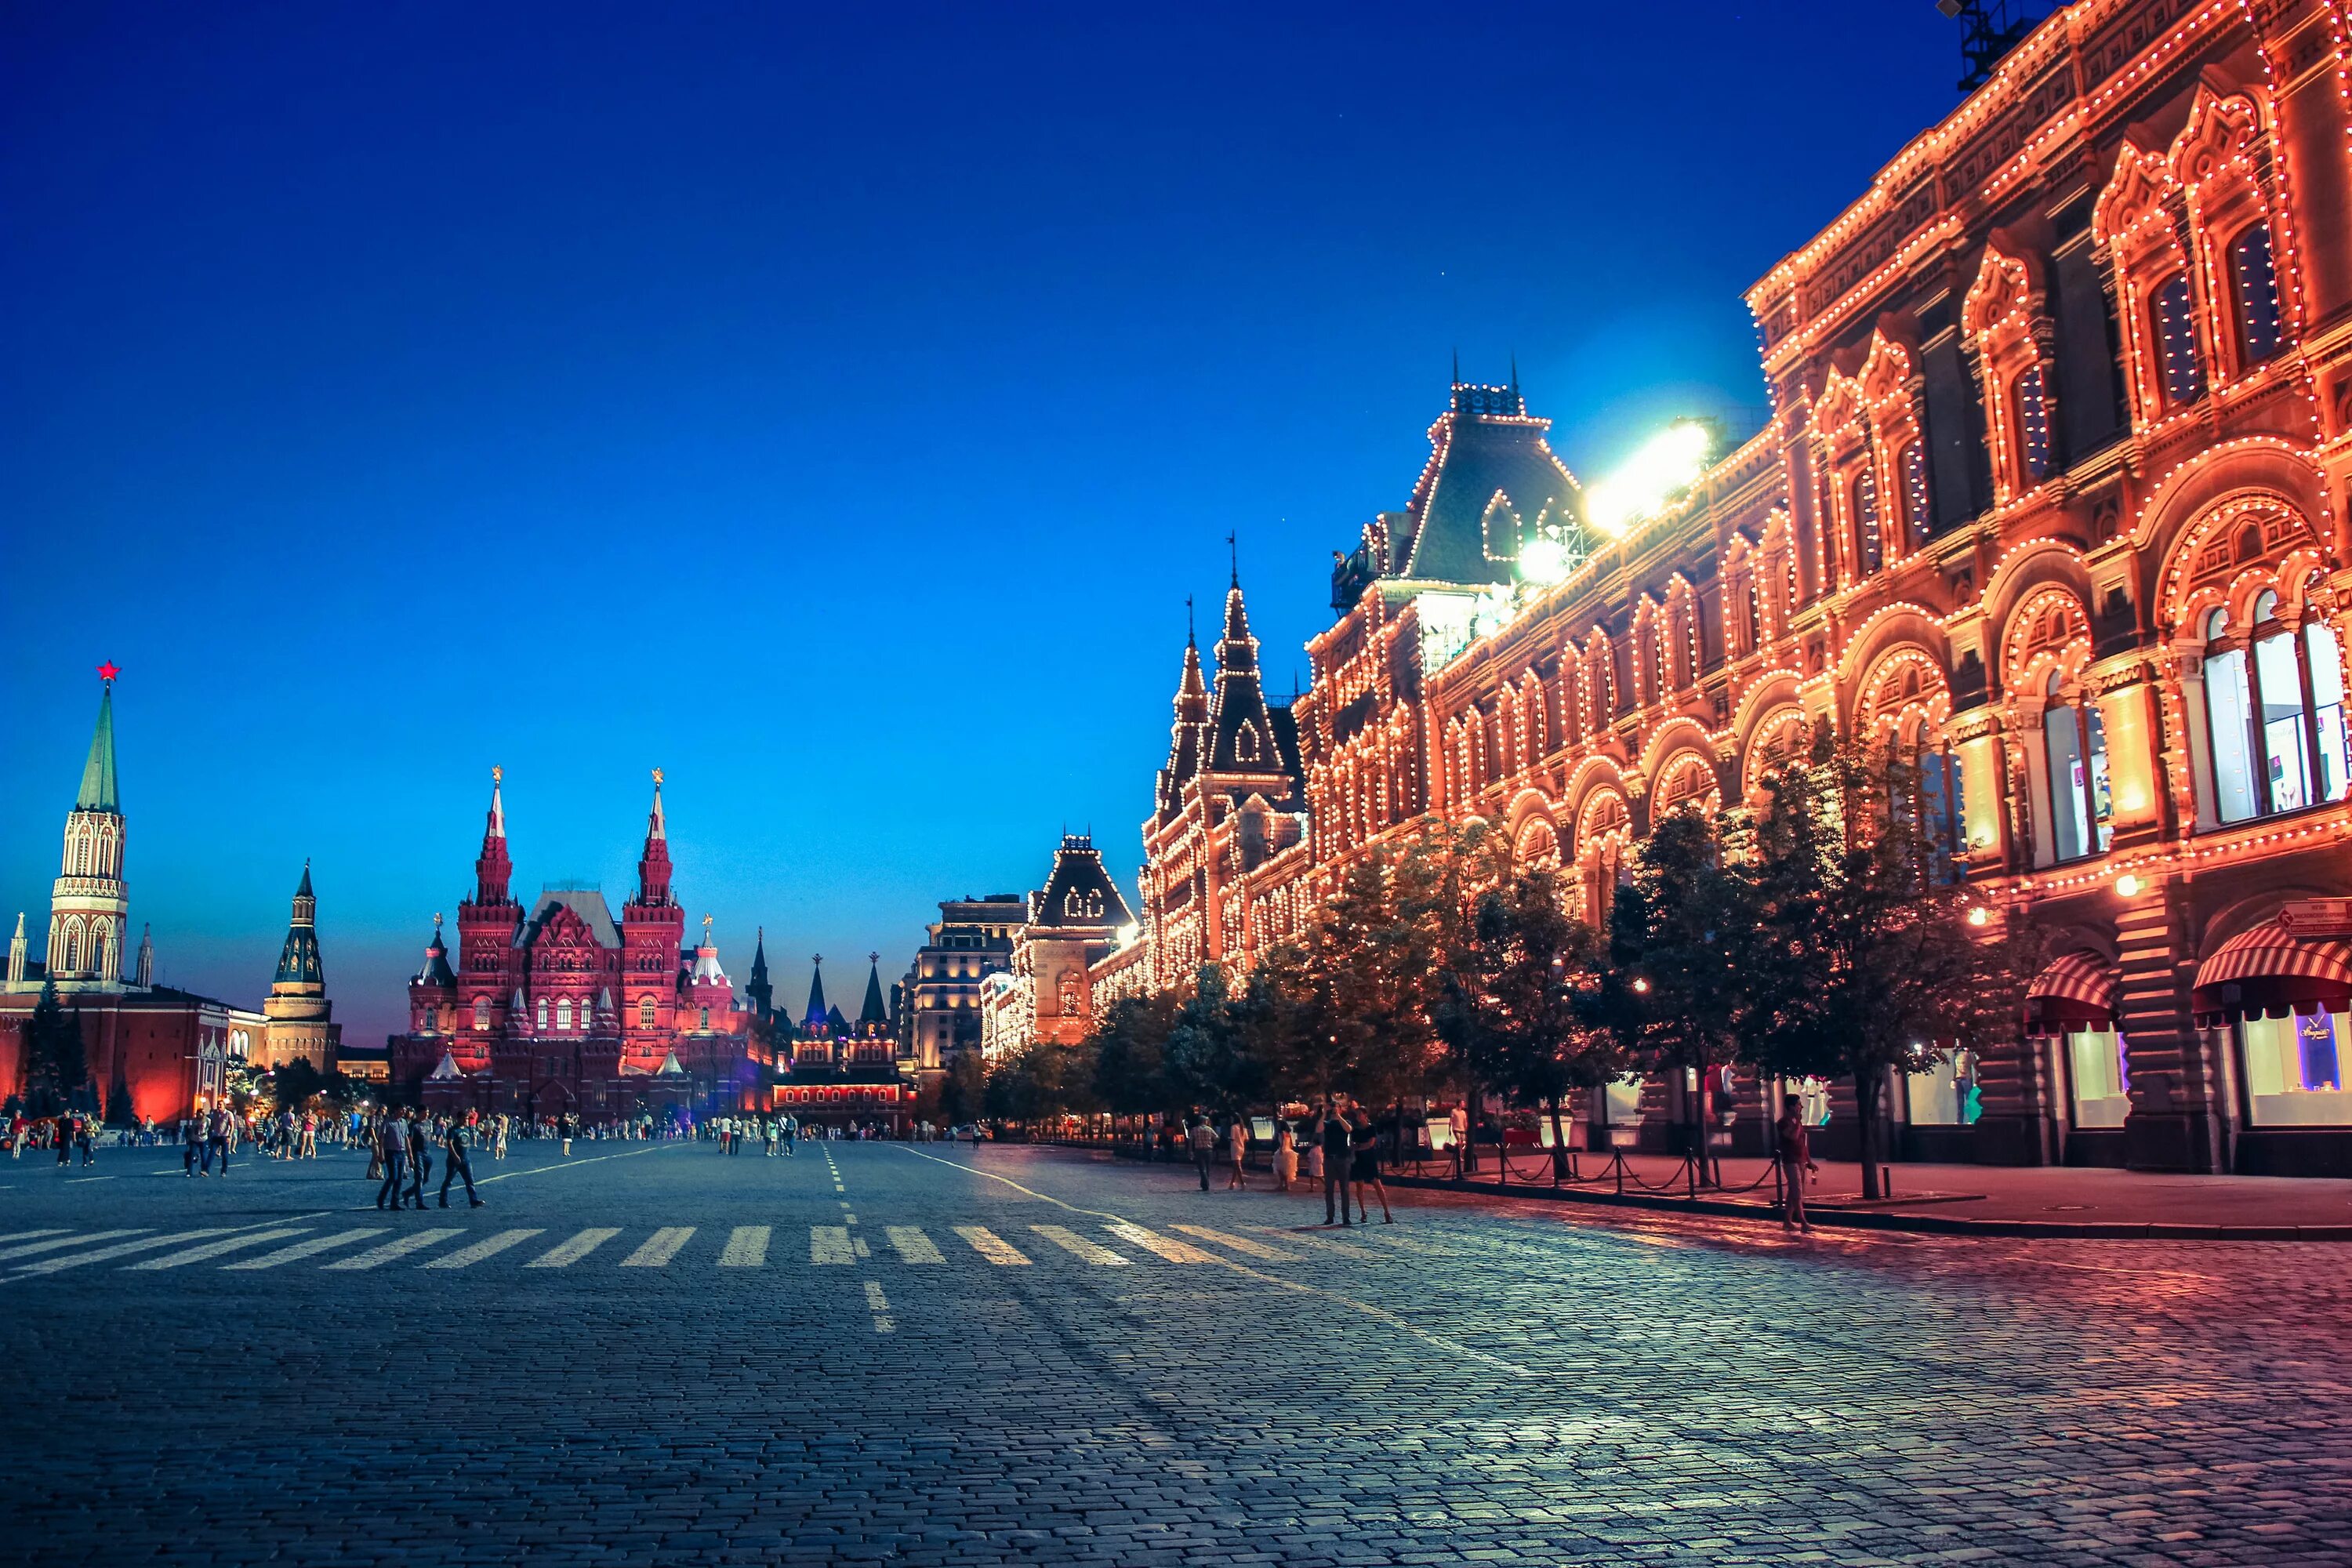 Ред сквер Москва. Moscow Red Square. Красная площадь, 3, Москва, Россия. Москва красиво.